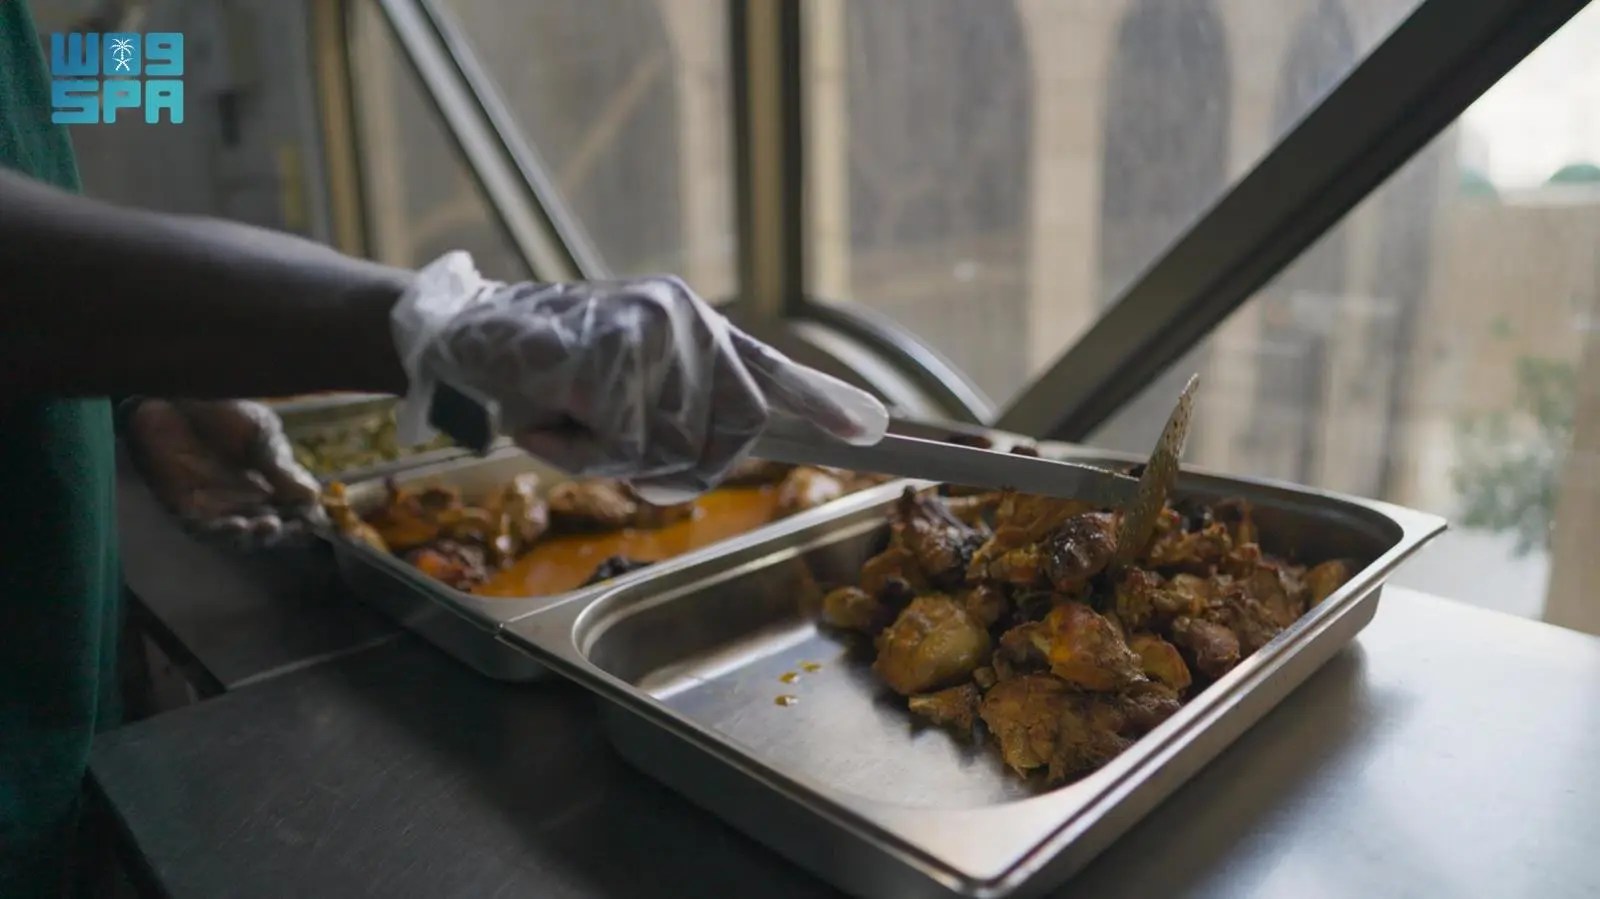 “إكرام مكة” تحفظ أكثر من 92 ألف كيلو من فائض الطعام في نوفمبر الماضي